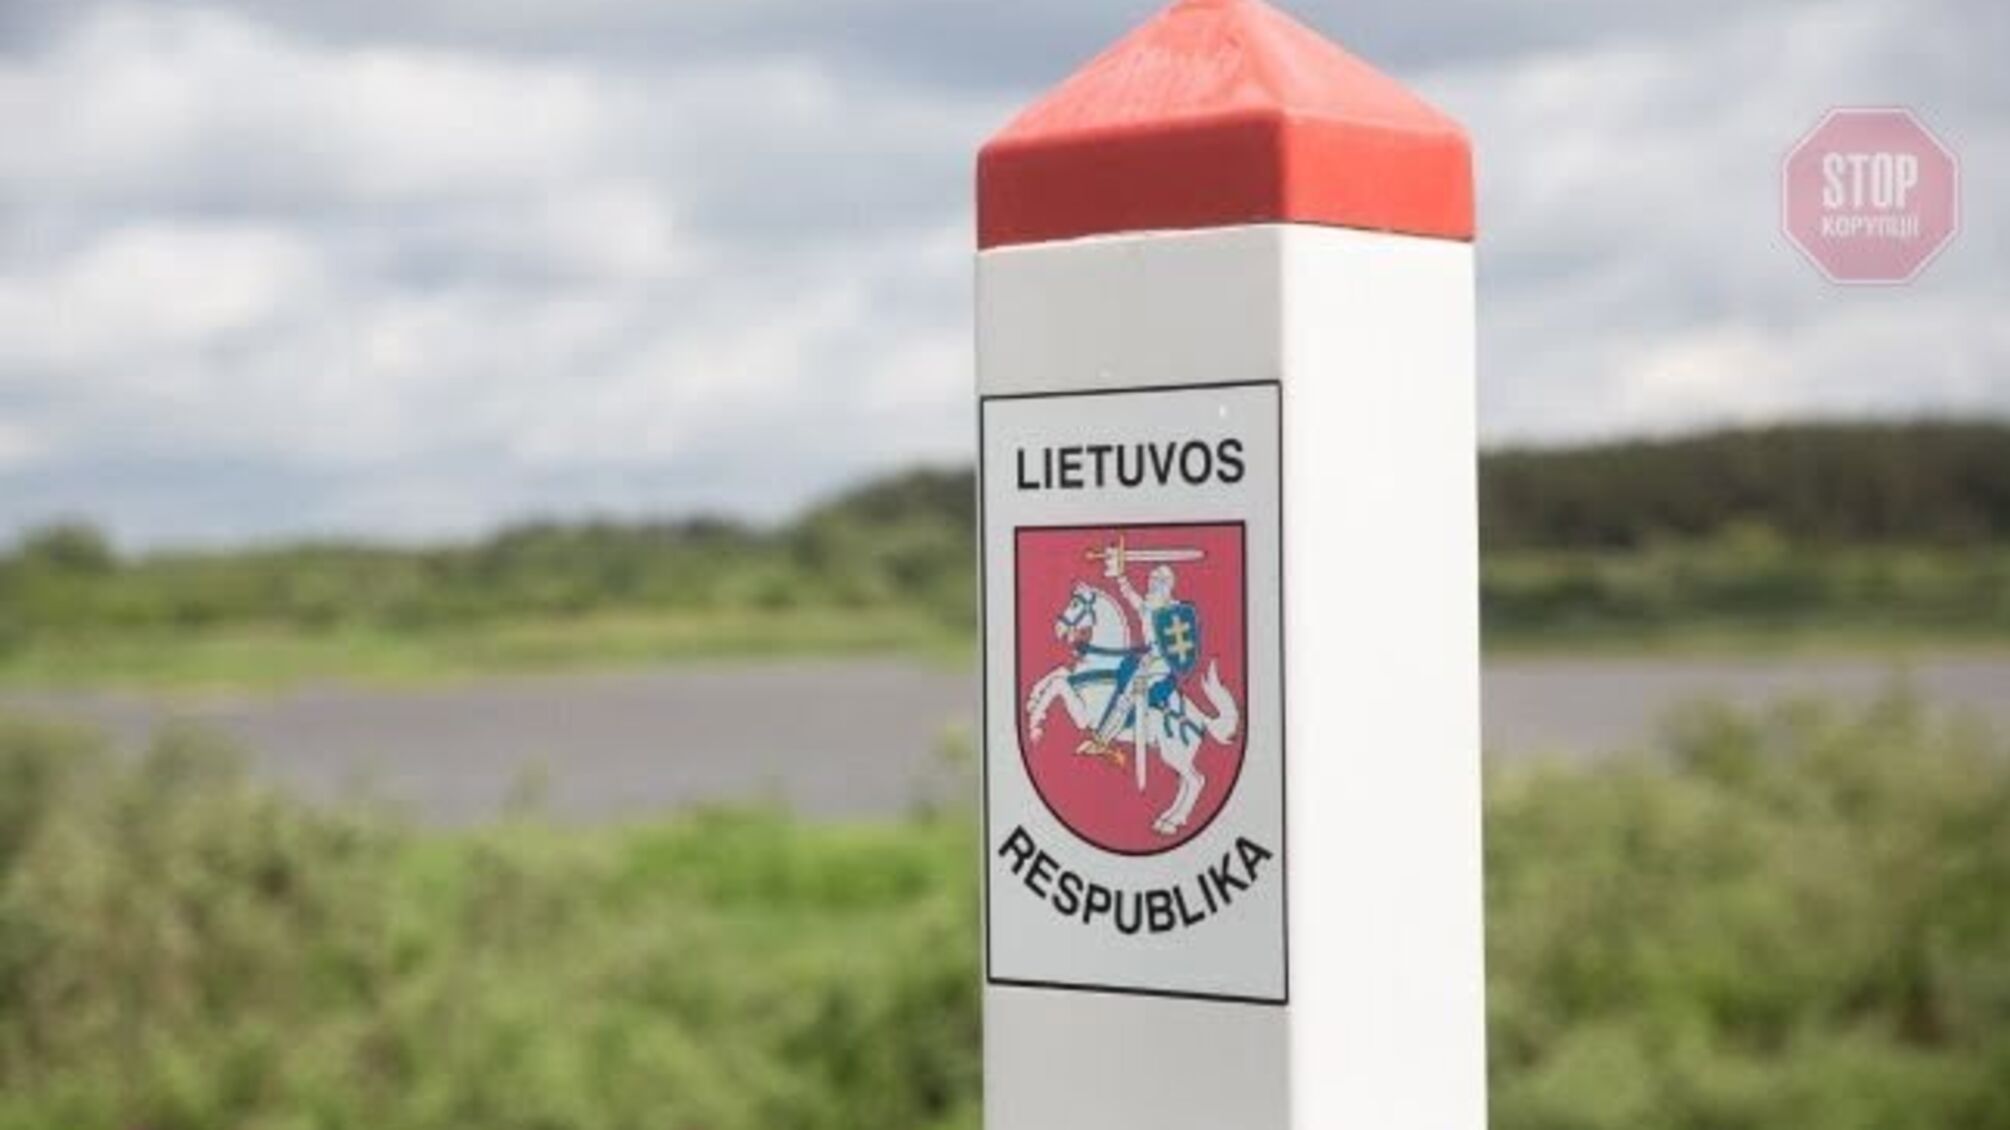 Более 160 человек за сутки: поток мигрантов из Беларуси в Литву не уменьшается